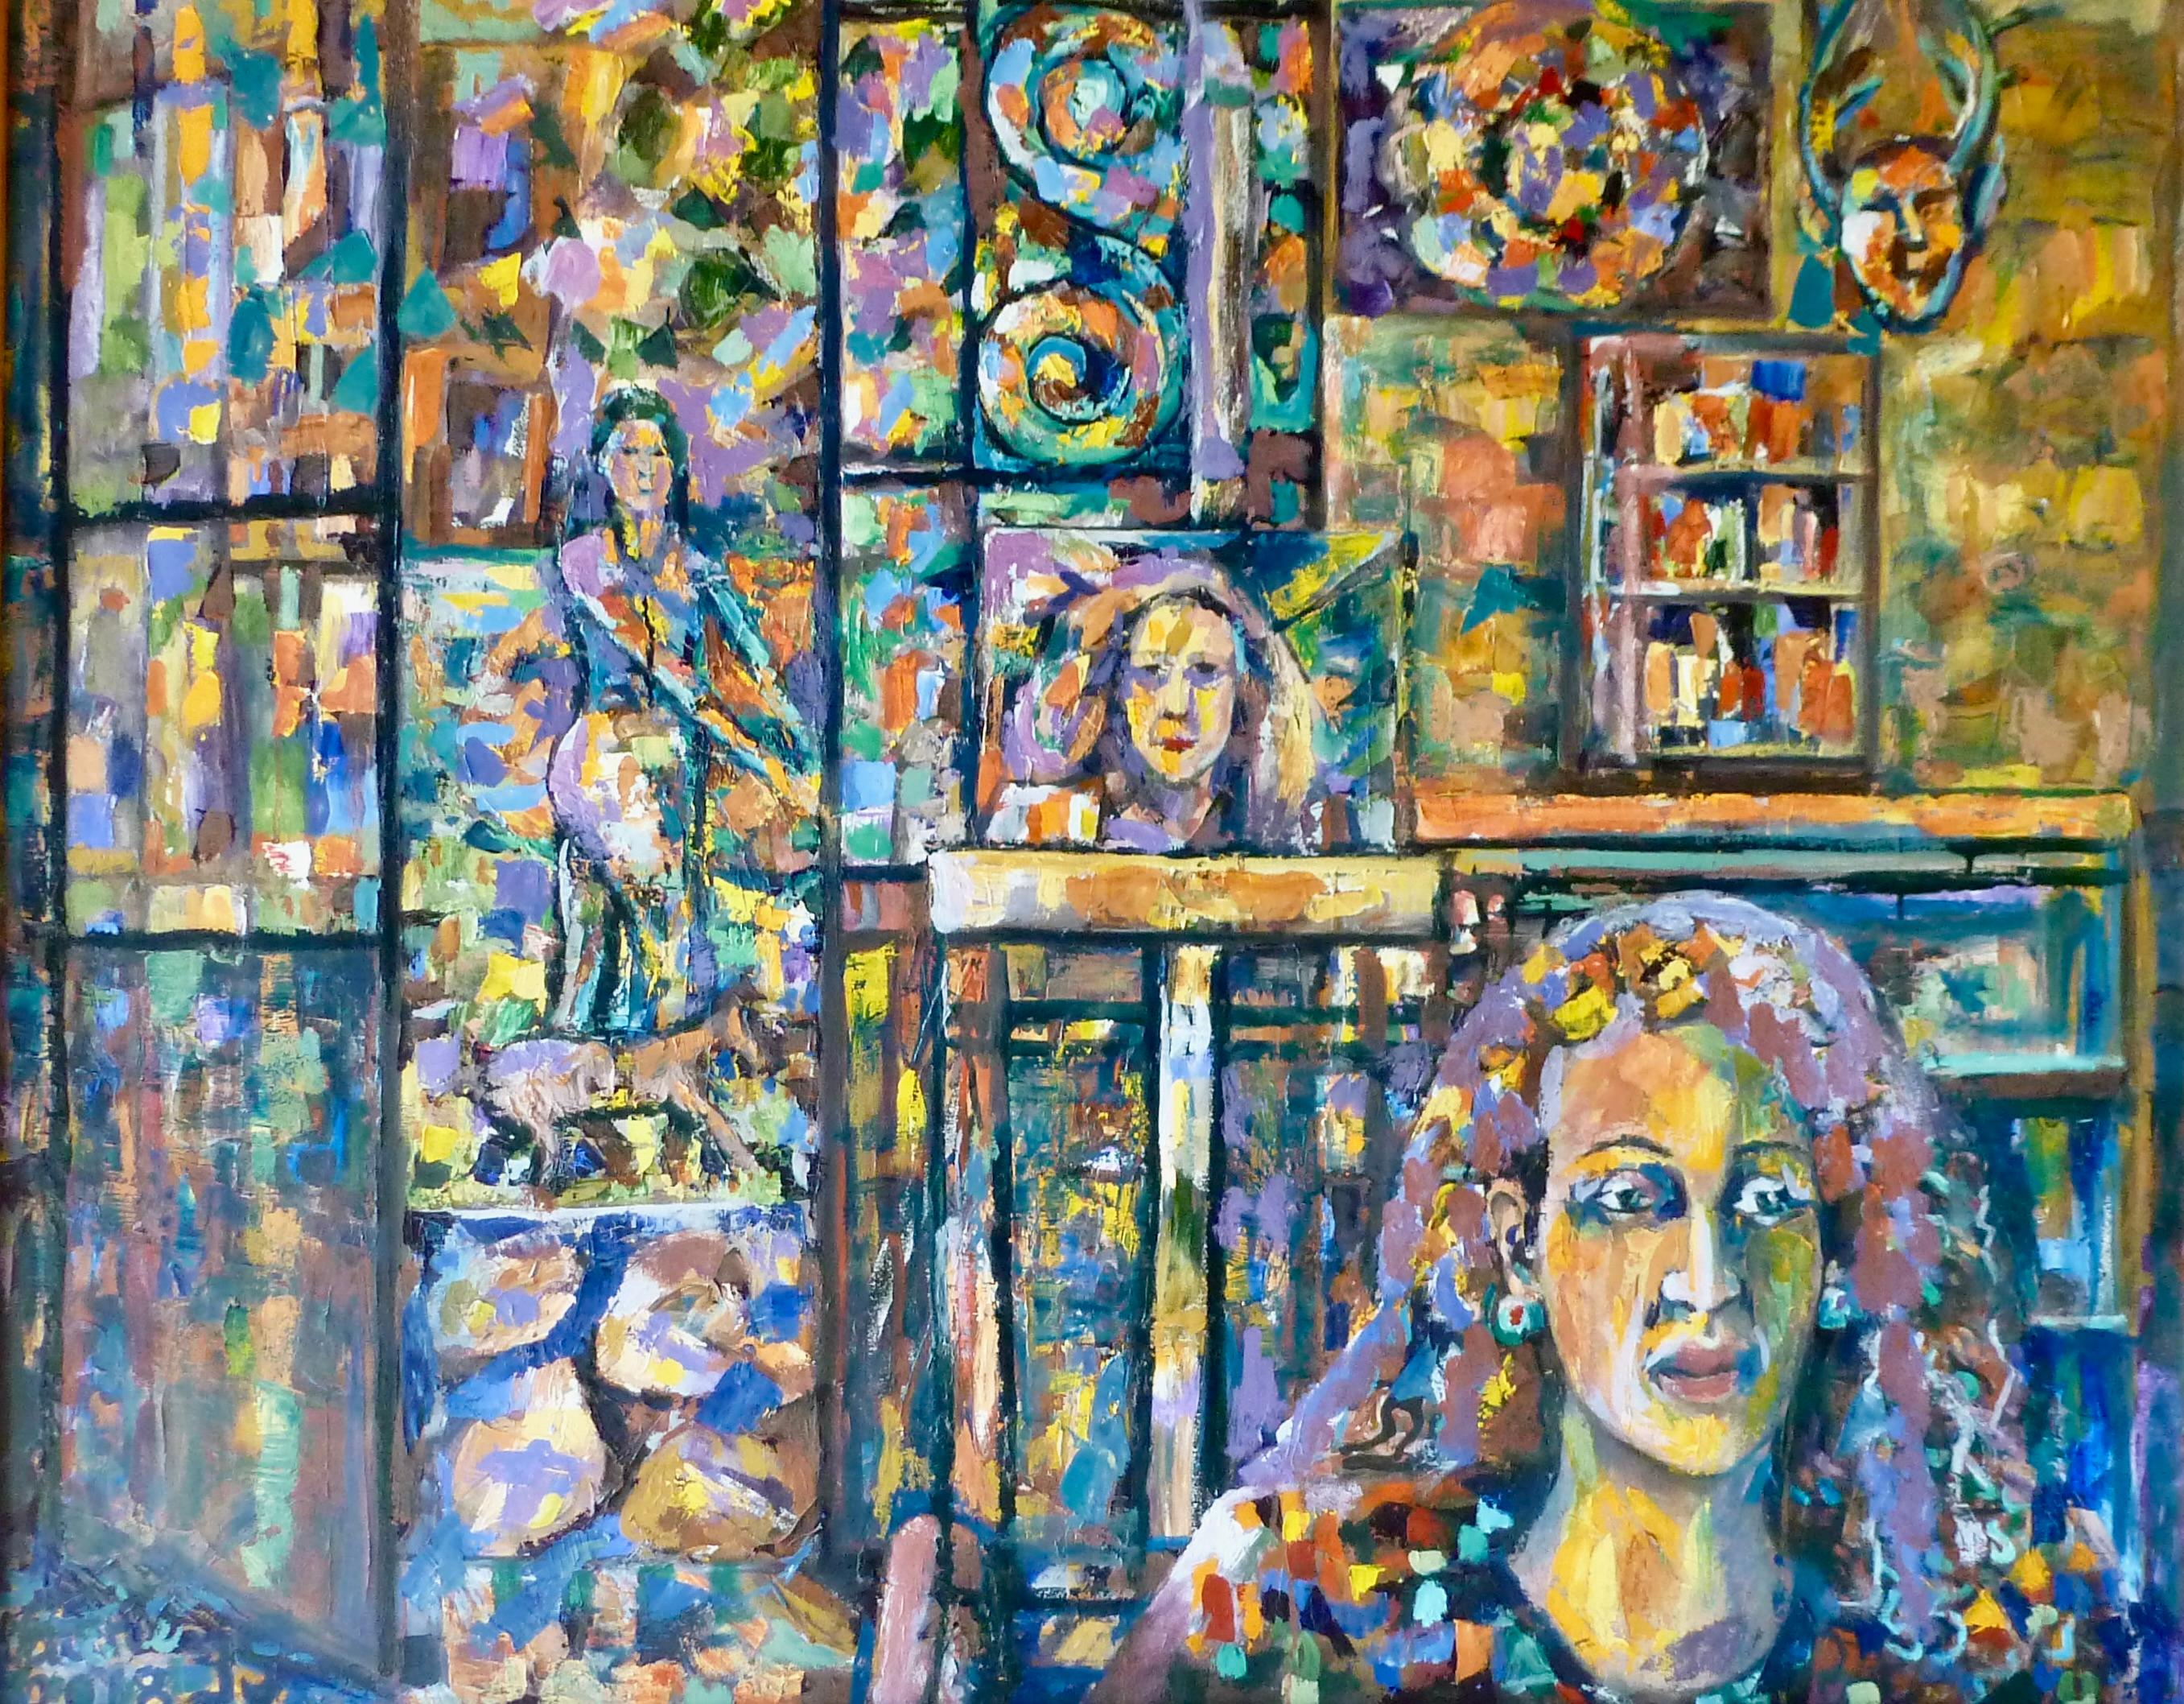 Vatche Geuvdjelian  Abstract Painting – „Visitor In My Studio“ 2021, farbenfrohes Ölgemälde auf Leinwand, abstrakter armenischer Künstler